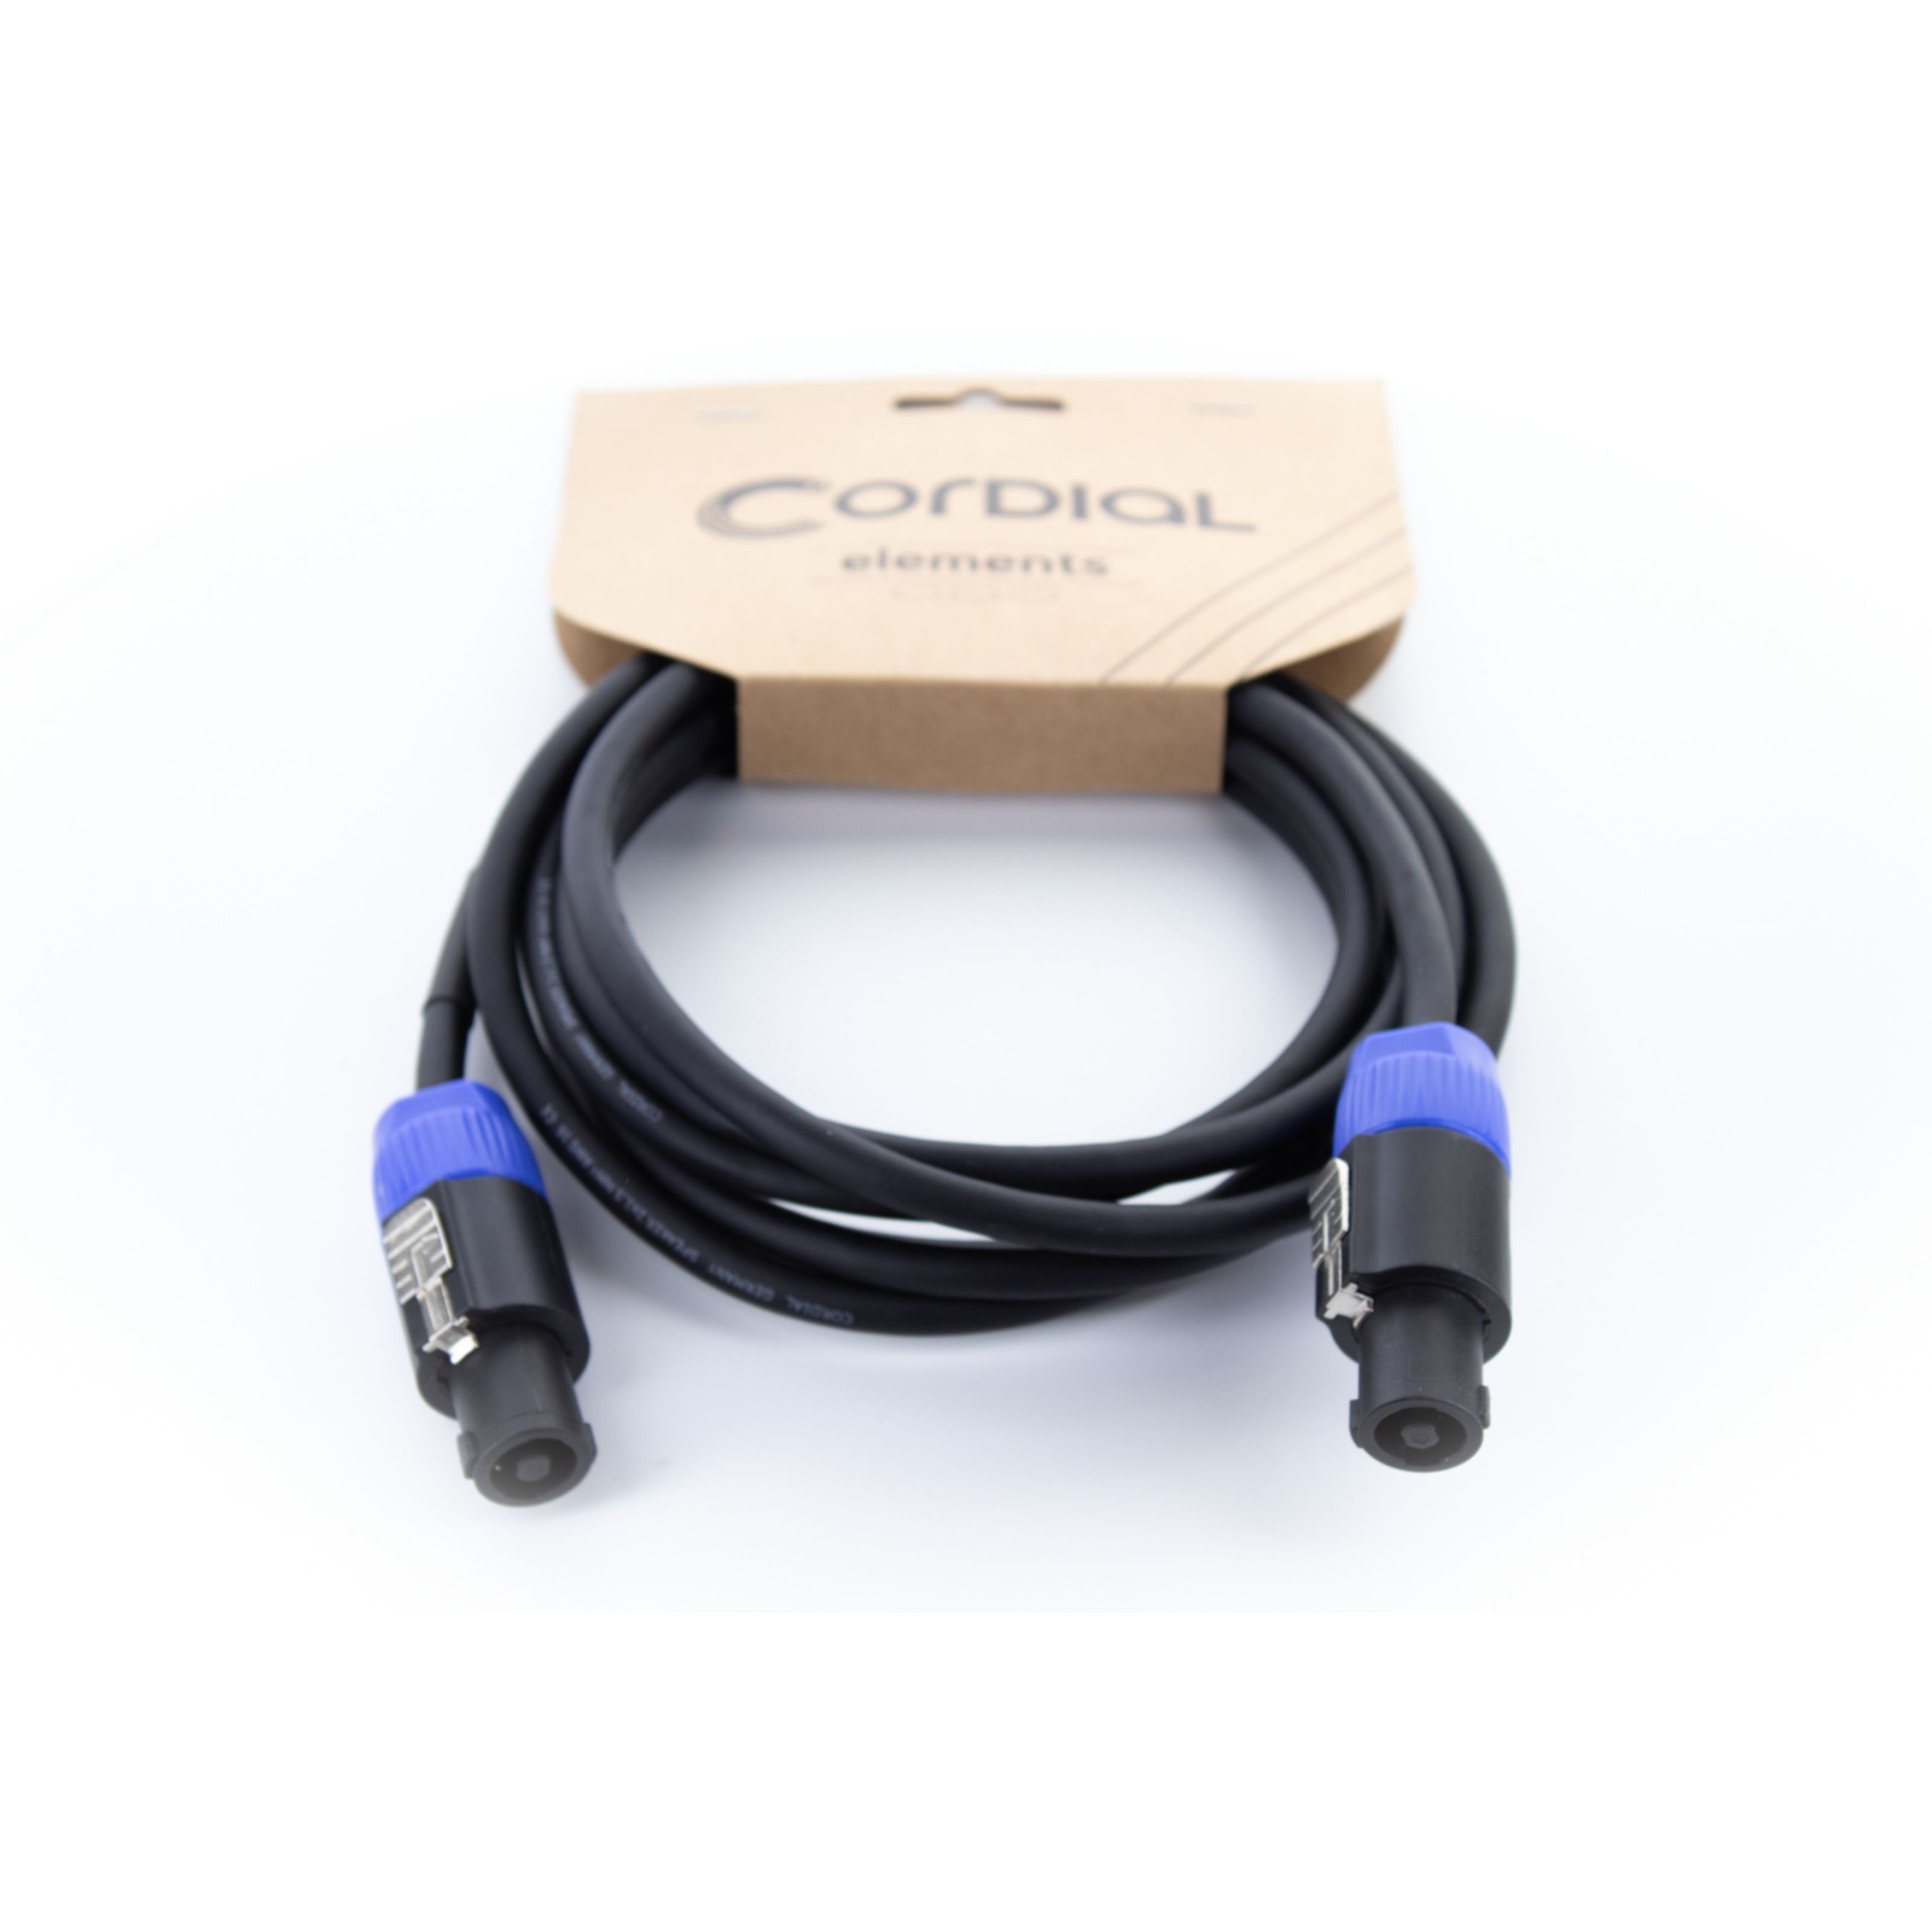 Cordial Audio-Kabel, EL 5 LL 215 Lautsprecherkabel 5 m - Lautsprecherkabel